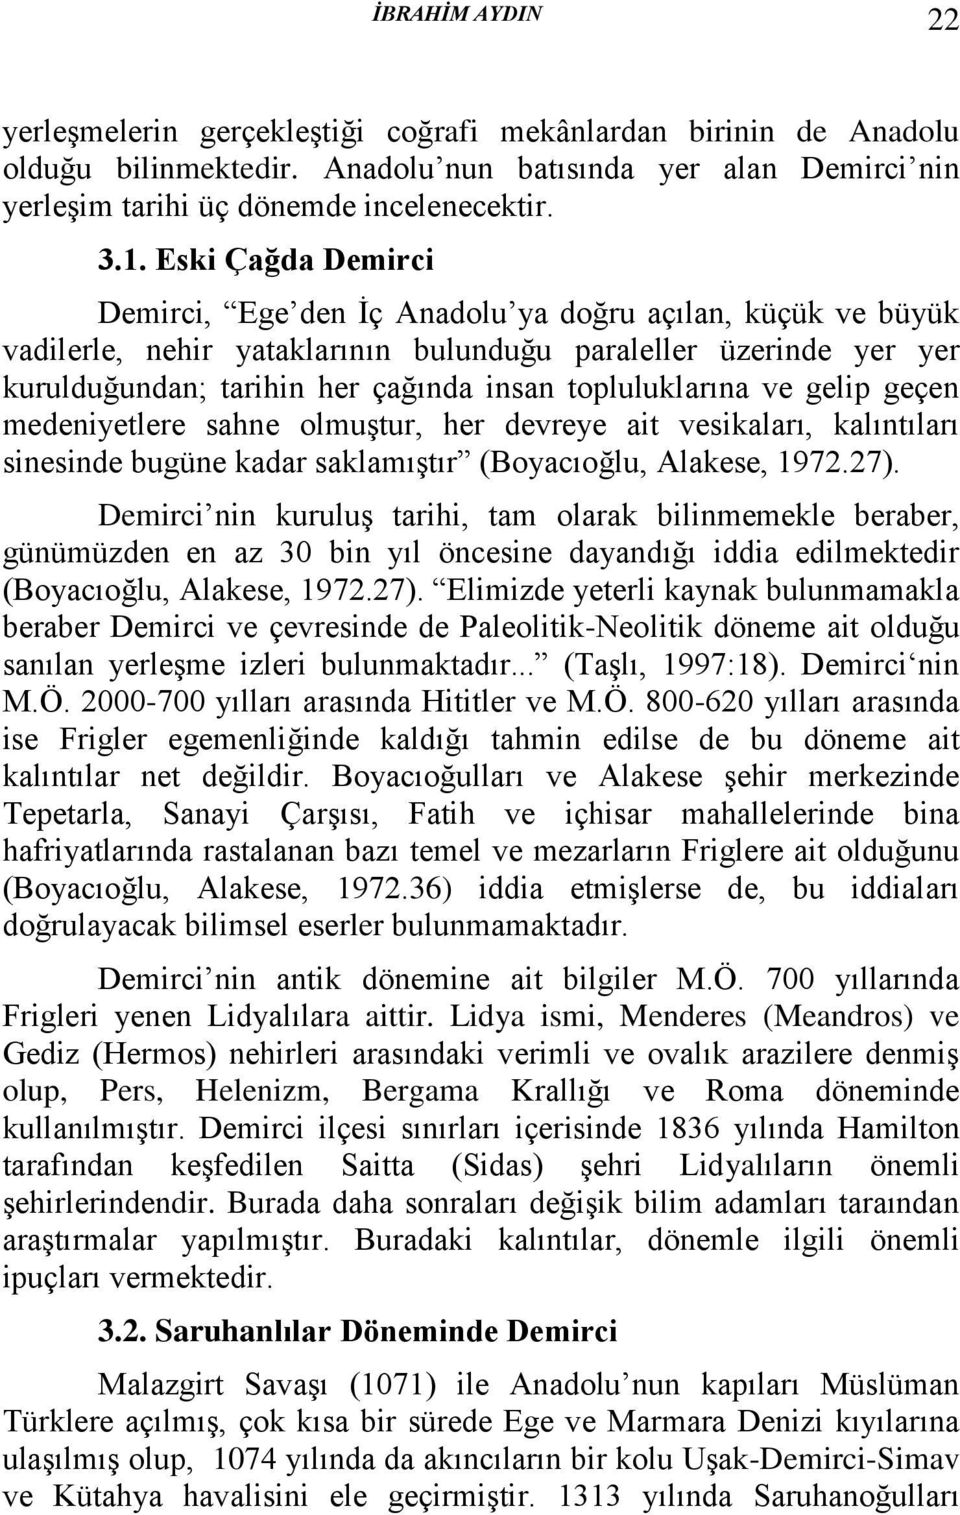 topluluklarına ve gelip geçen medeniyetlere sahne olmuştur, her devreye ait vesikaları, kalıntıları sinesinde bugüne kadar saklamıştır (Boyacıoğlu, Alakese, 1972.27).